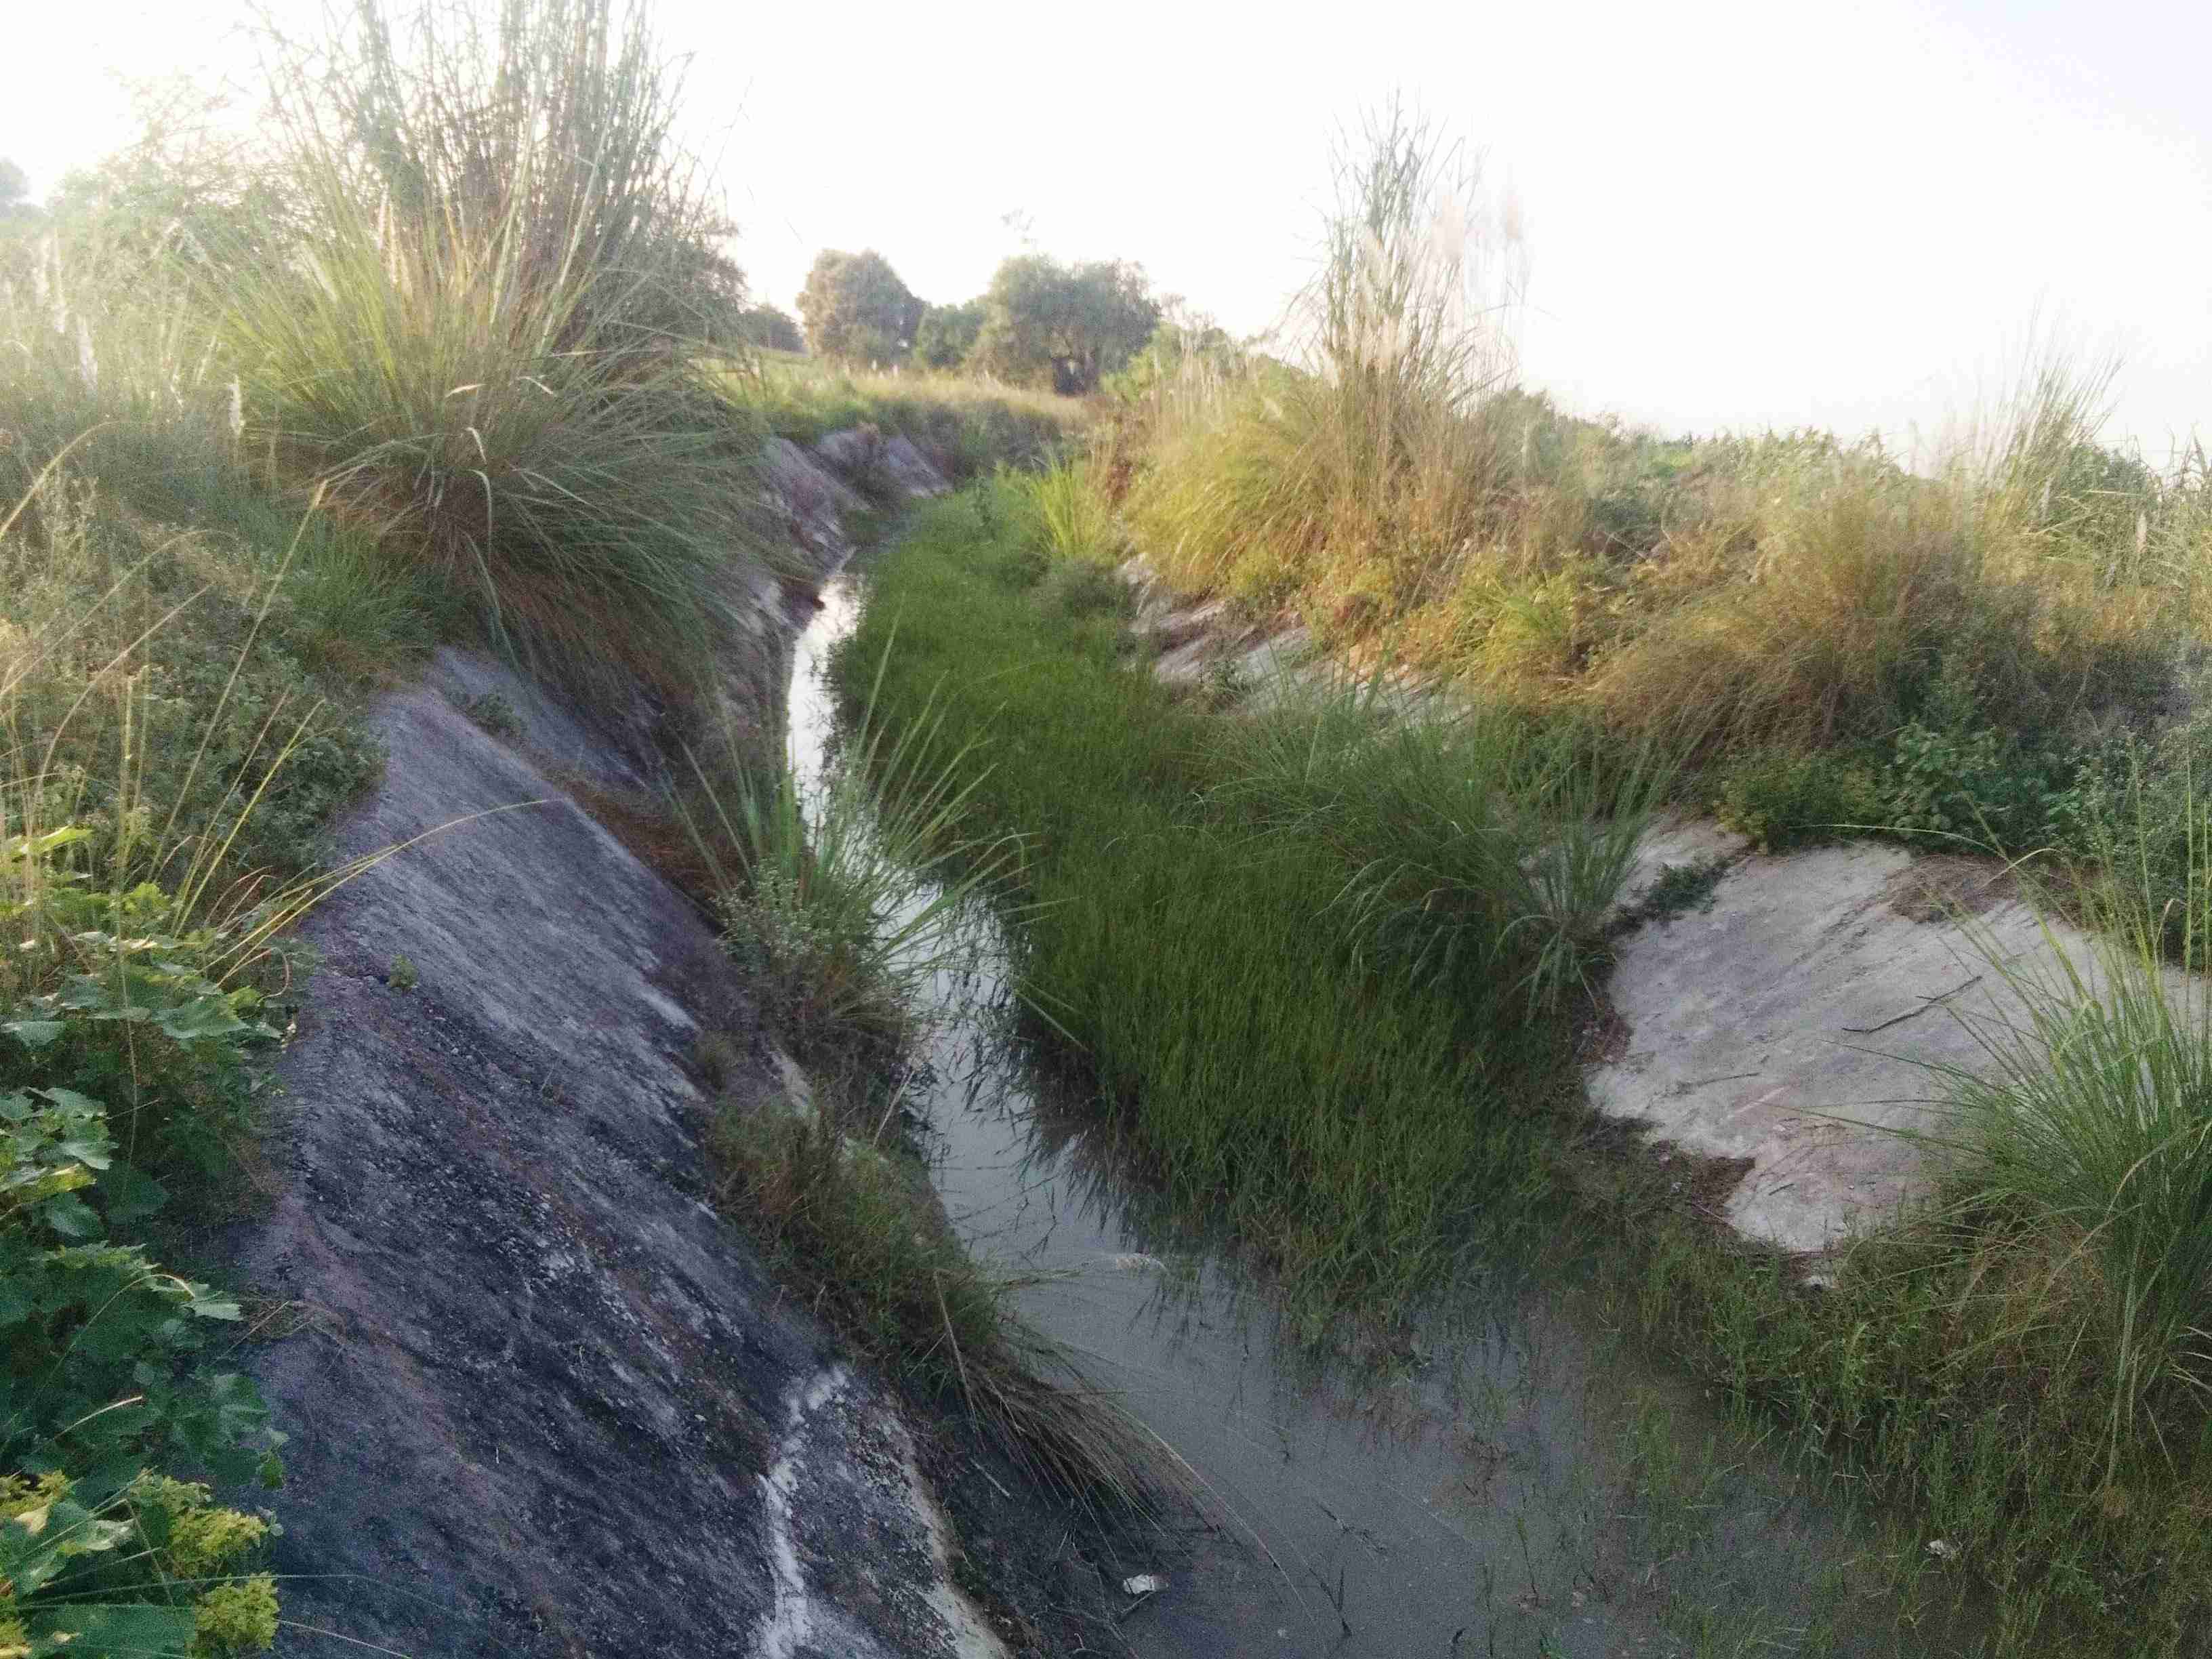 औरैया में माइनर और नहरों में पानी न आने से धान की फसल पर संकट